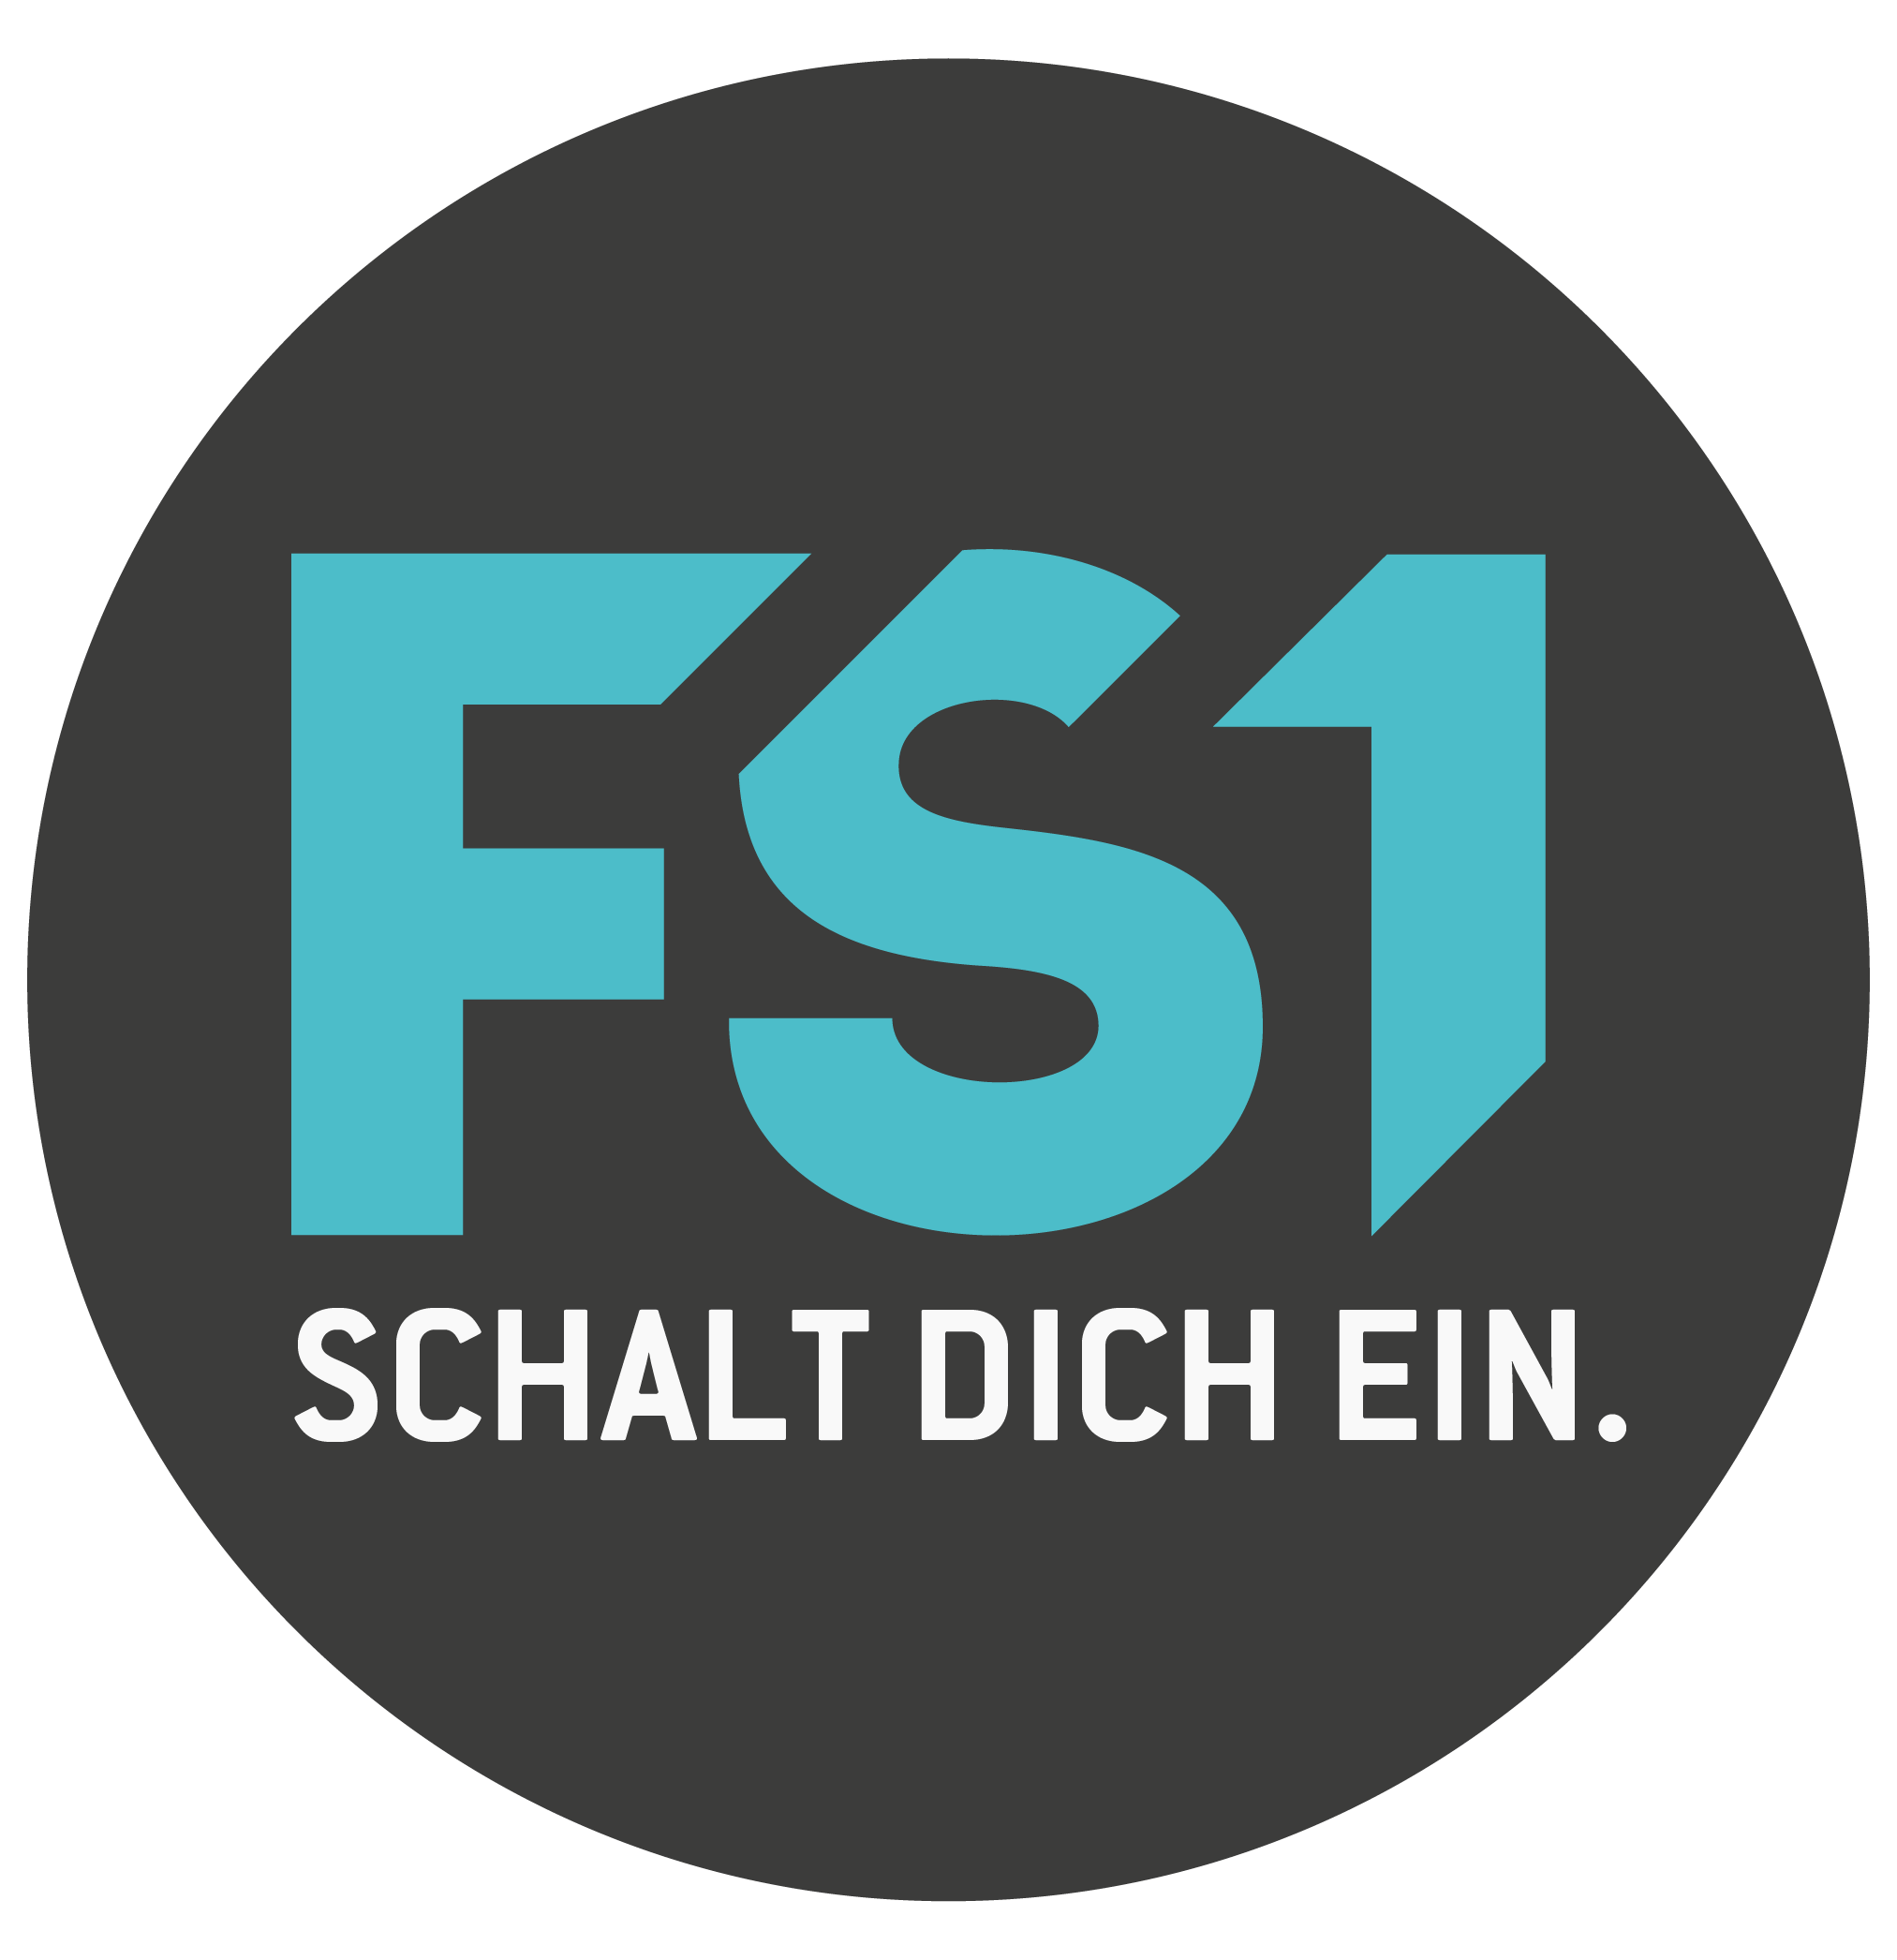 FS1 (Fernsehsender)